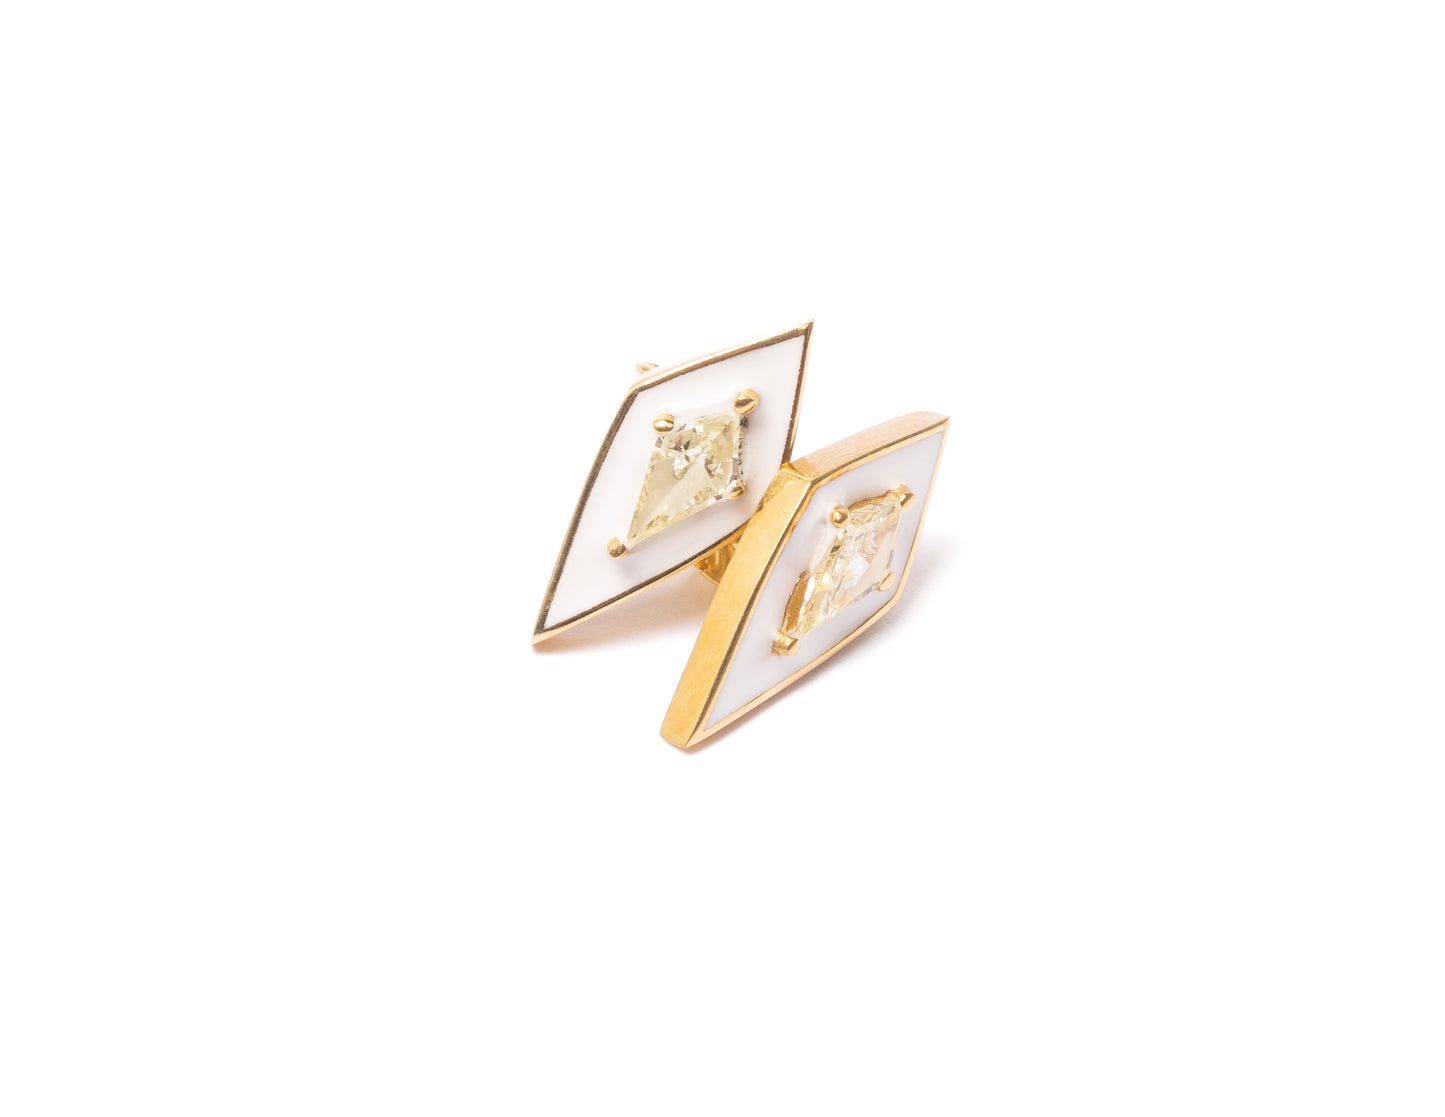 14K Gold Kite Cut Diamond + White Enamel Valley Girl Stud Earrings